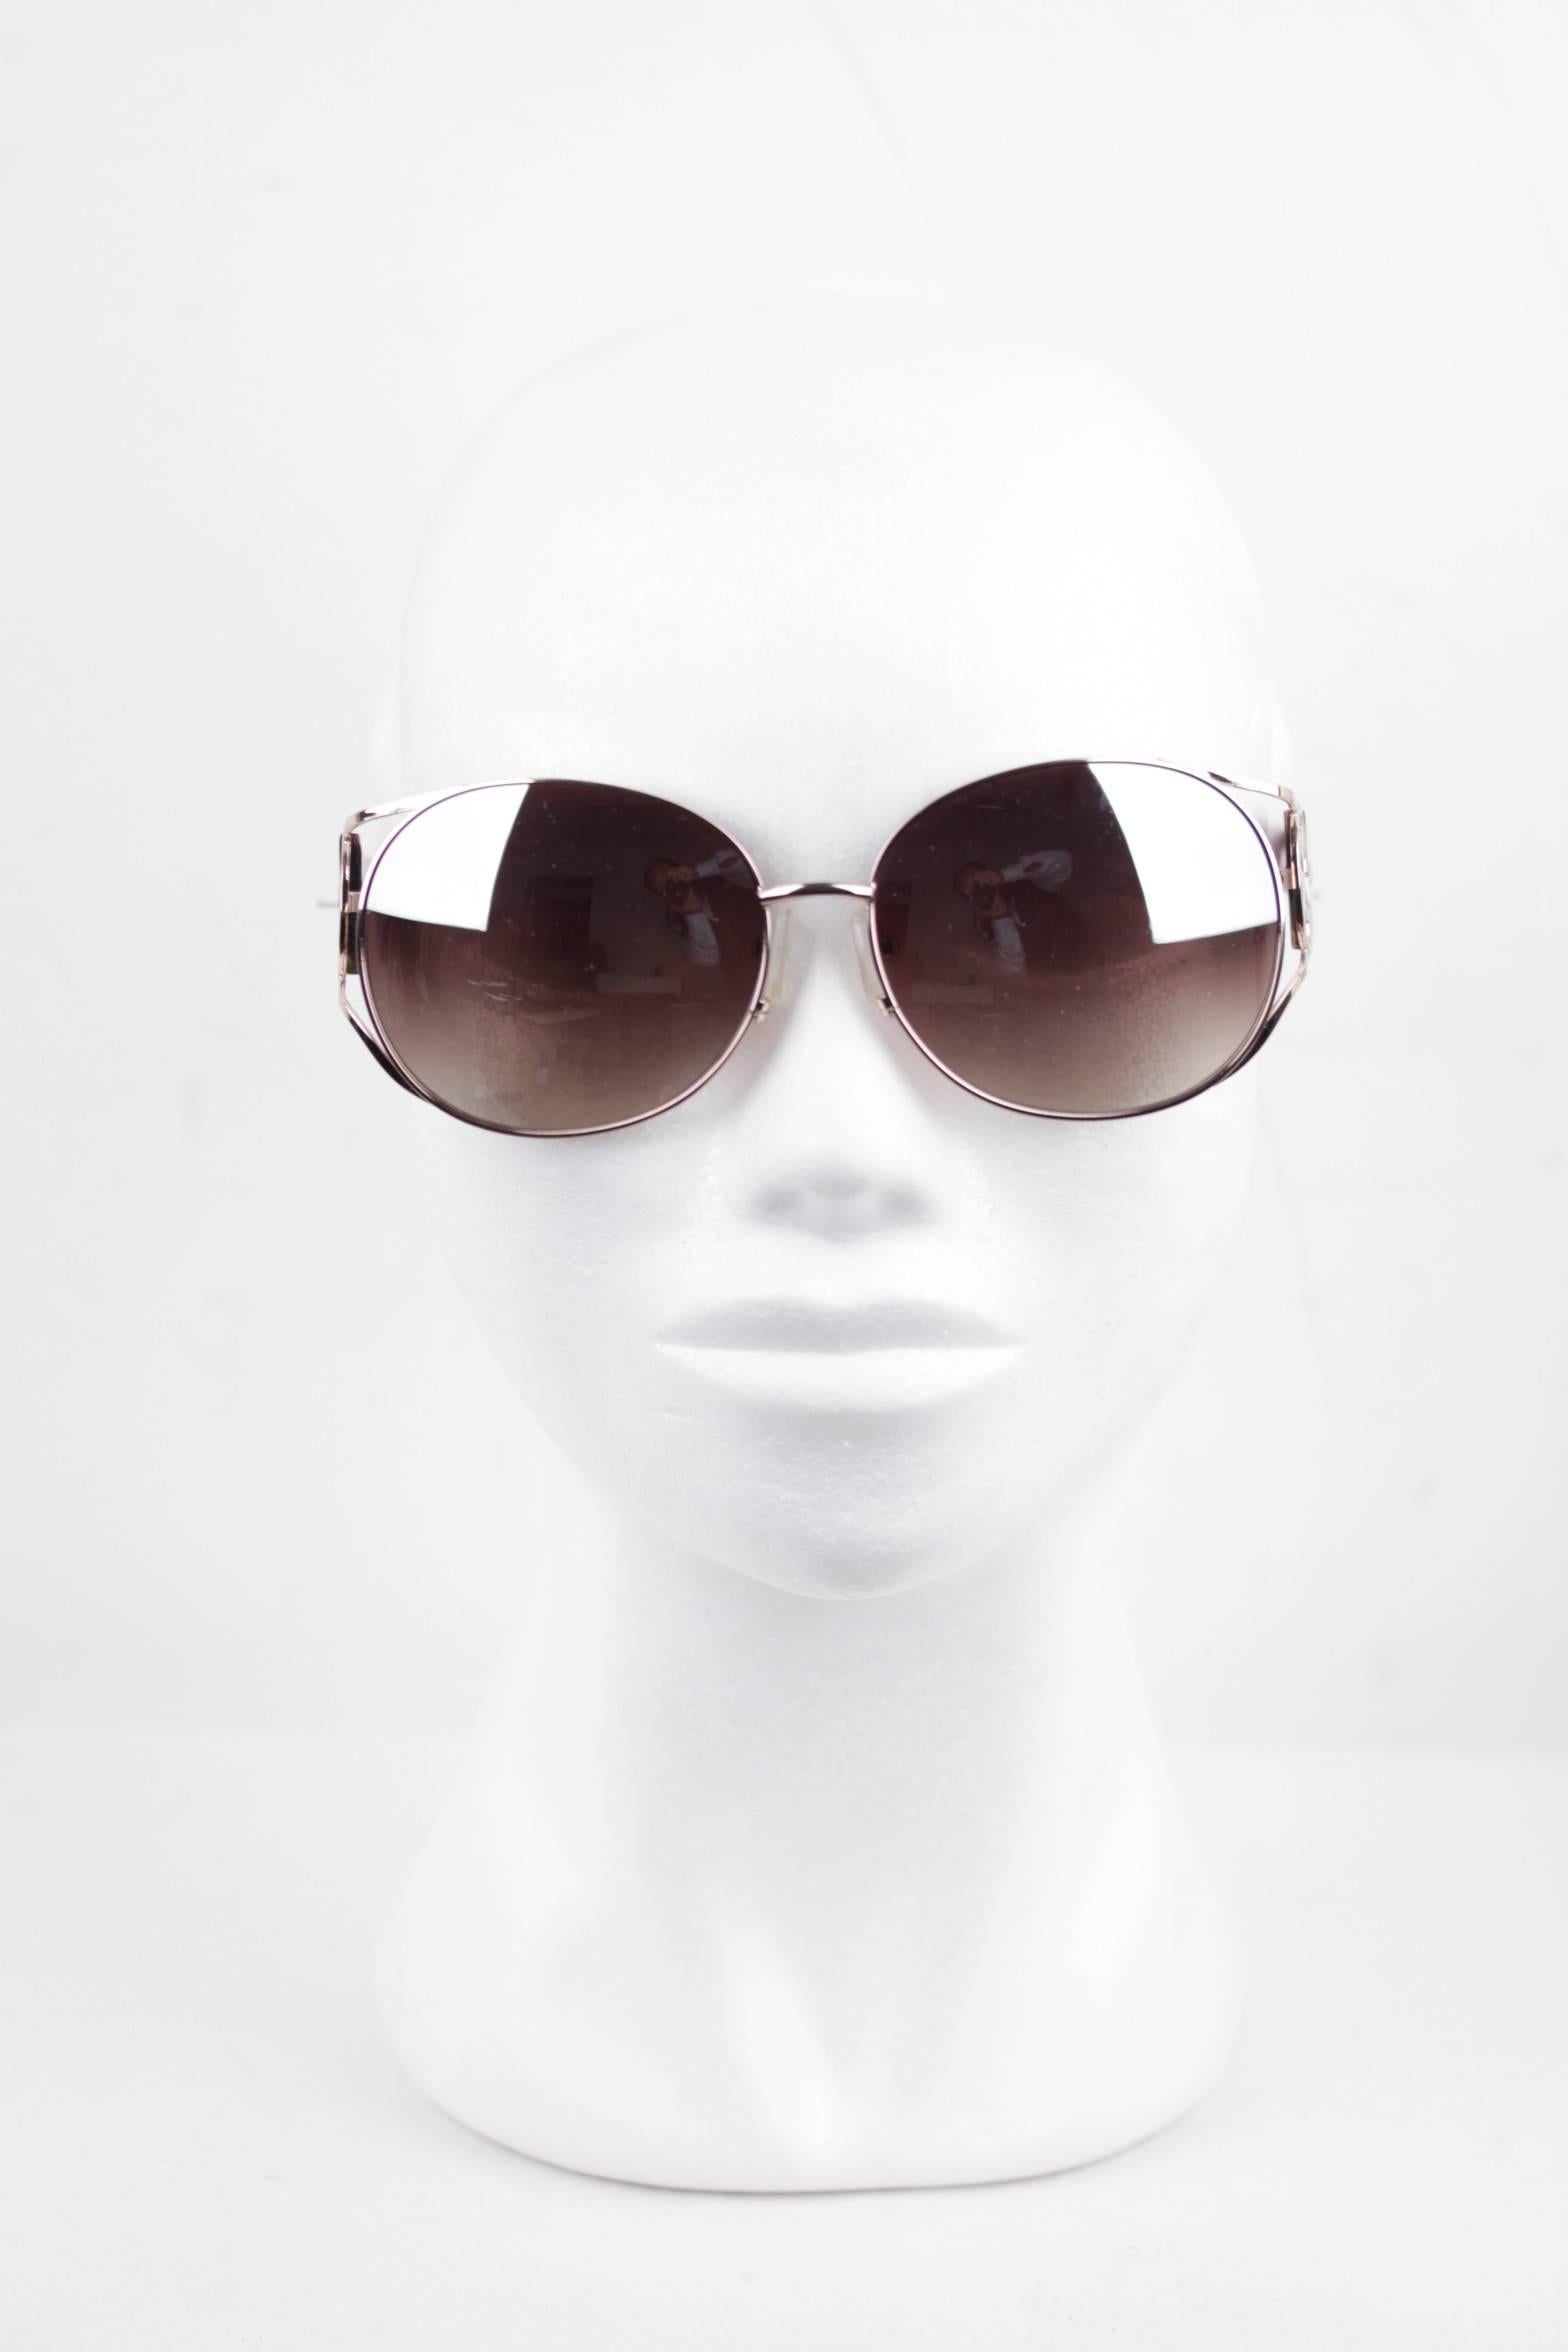 ROMEO GIGLI silver/brown oversized Sunglasses RGG4/S col.D 61/15 135 mirror lens 3